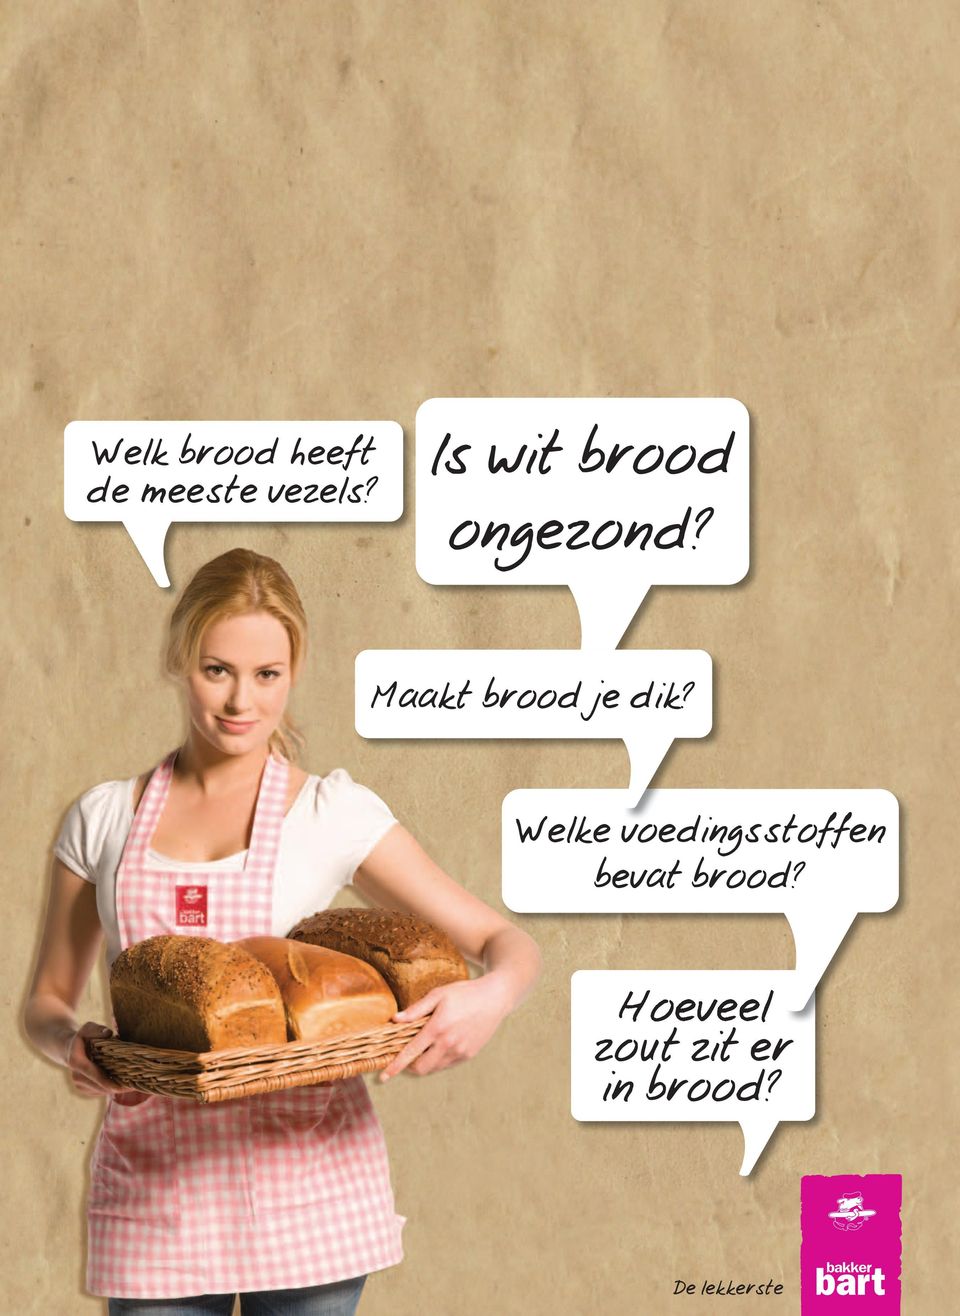 Maakt brood je dik?